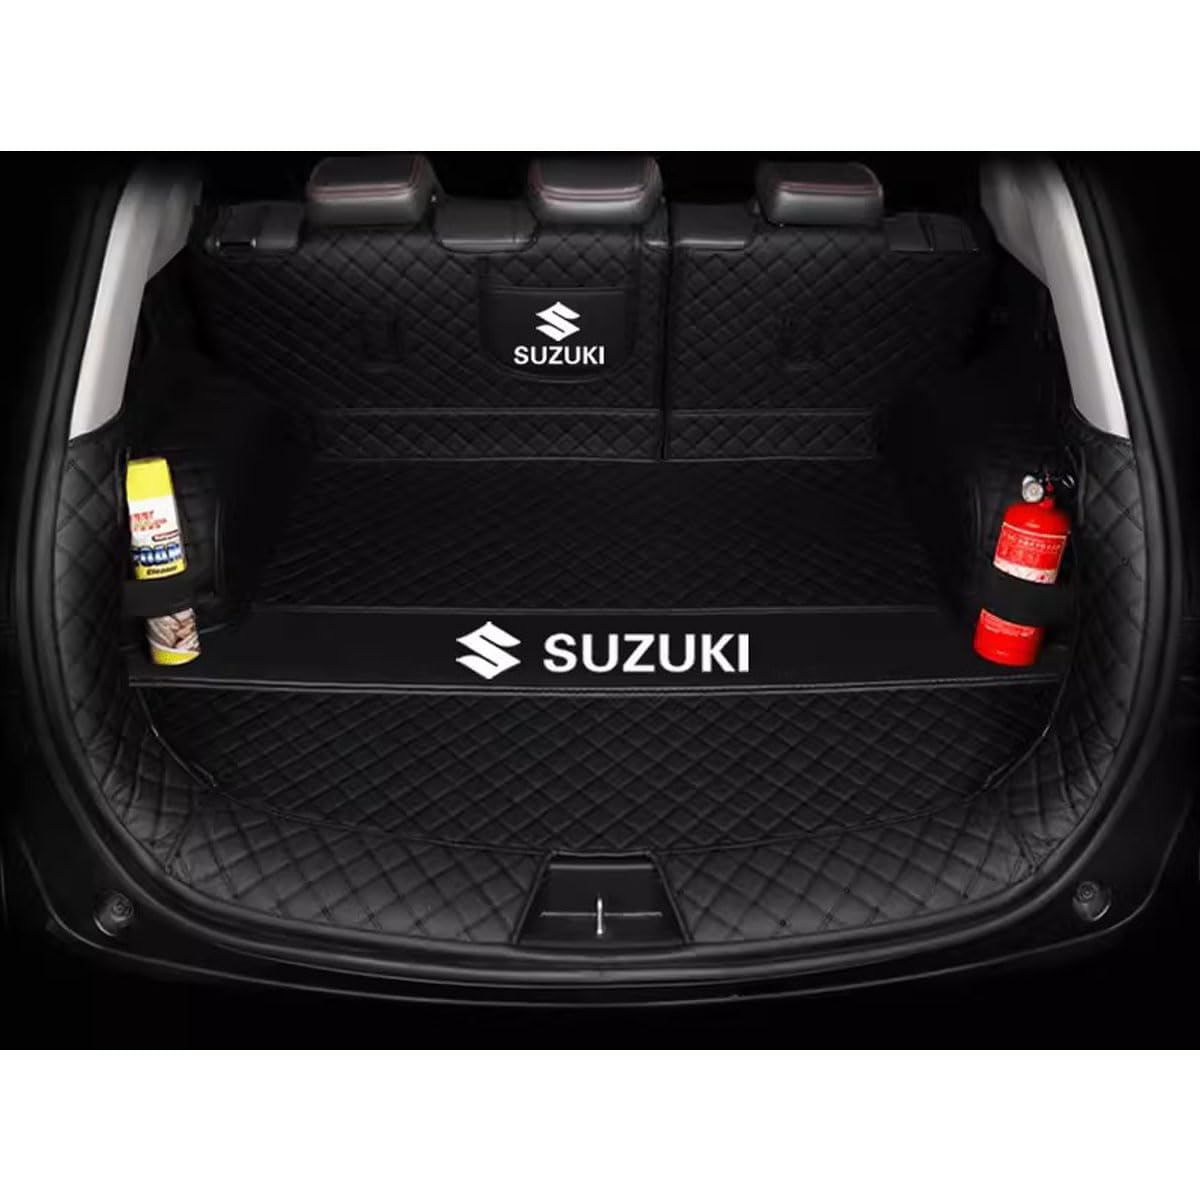 VVHUDA Auto Kofferraummatte für Suzuki SX4 S-Cross 2013-2023, Wasserdicht Kofferraumwanne Antirutsch Kofferraum Schutzmatte Interieur ZubehöR,Black Style von VVHUDA